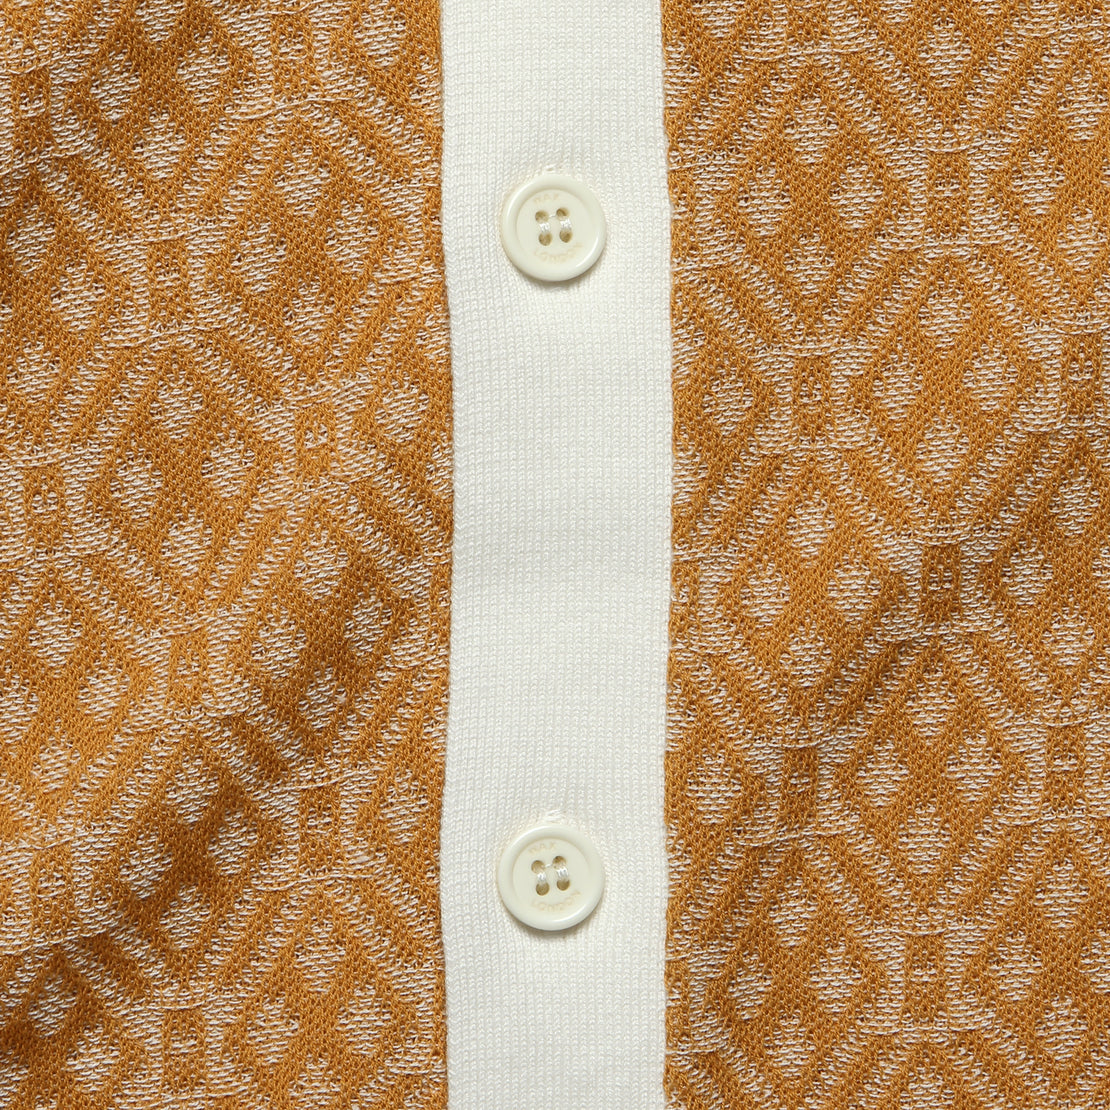 Tellaro Shirt - Tile Knit Mustard